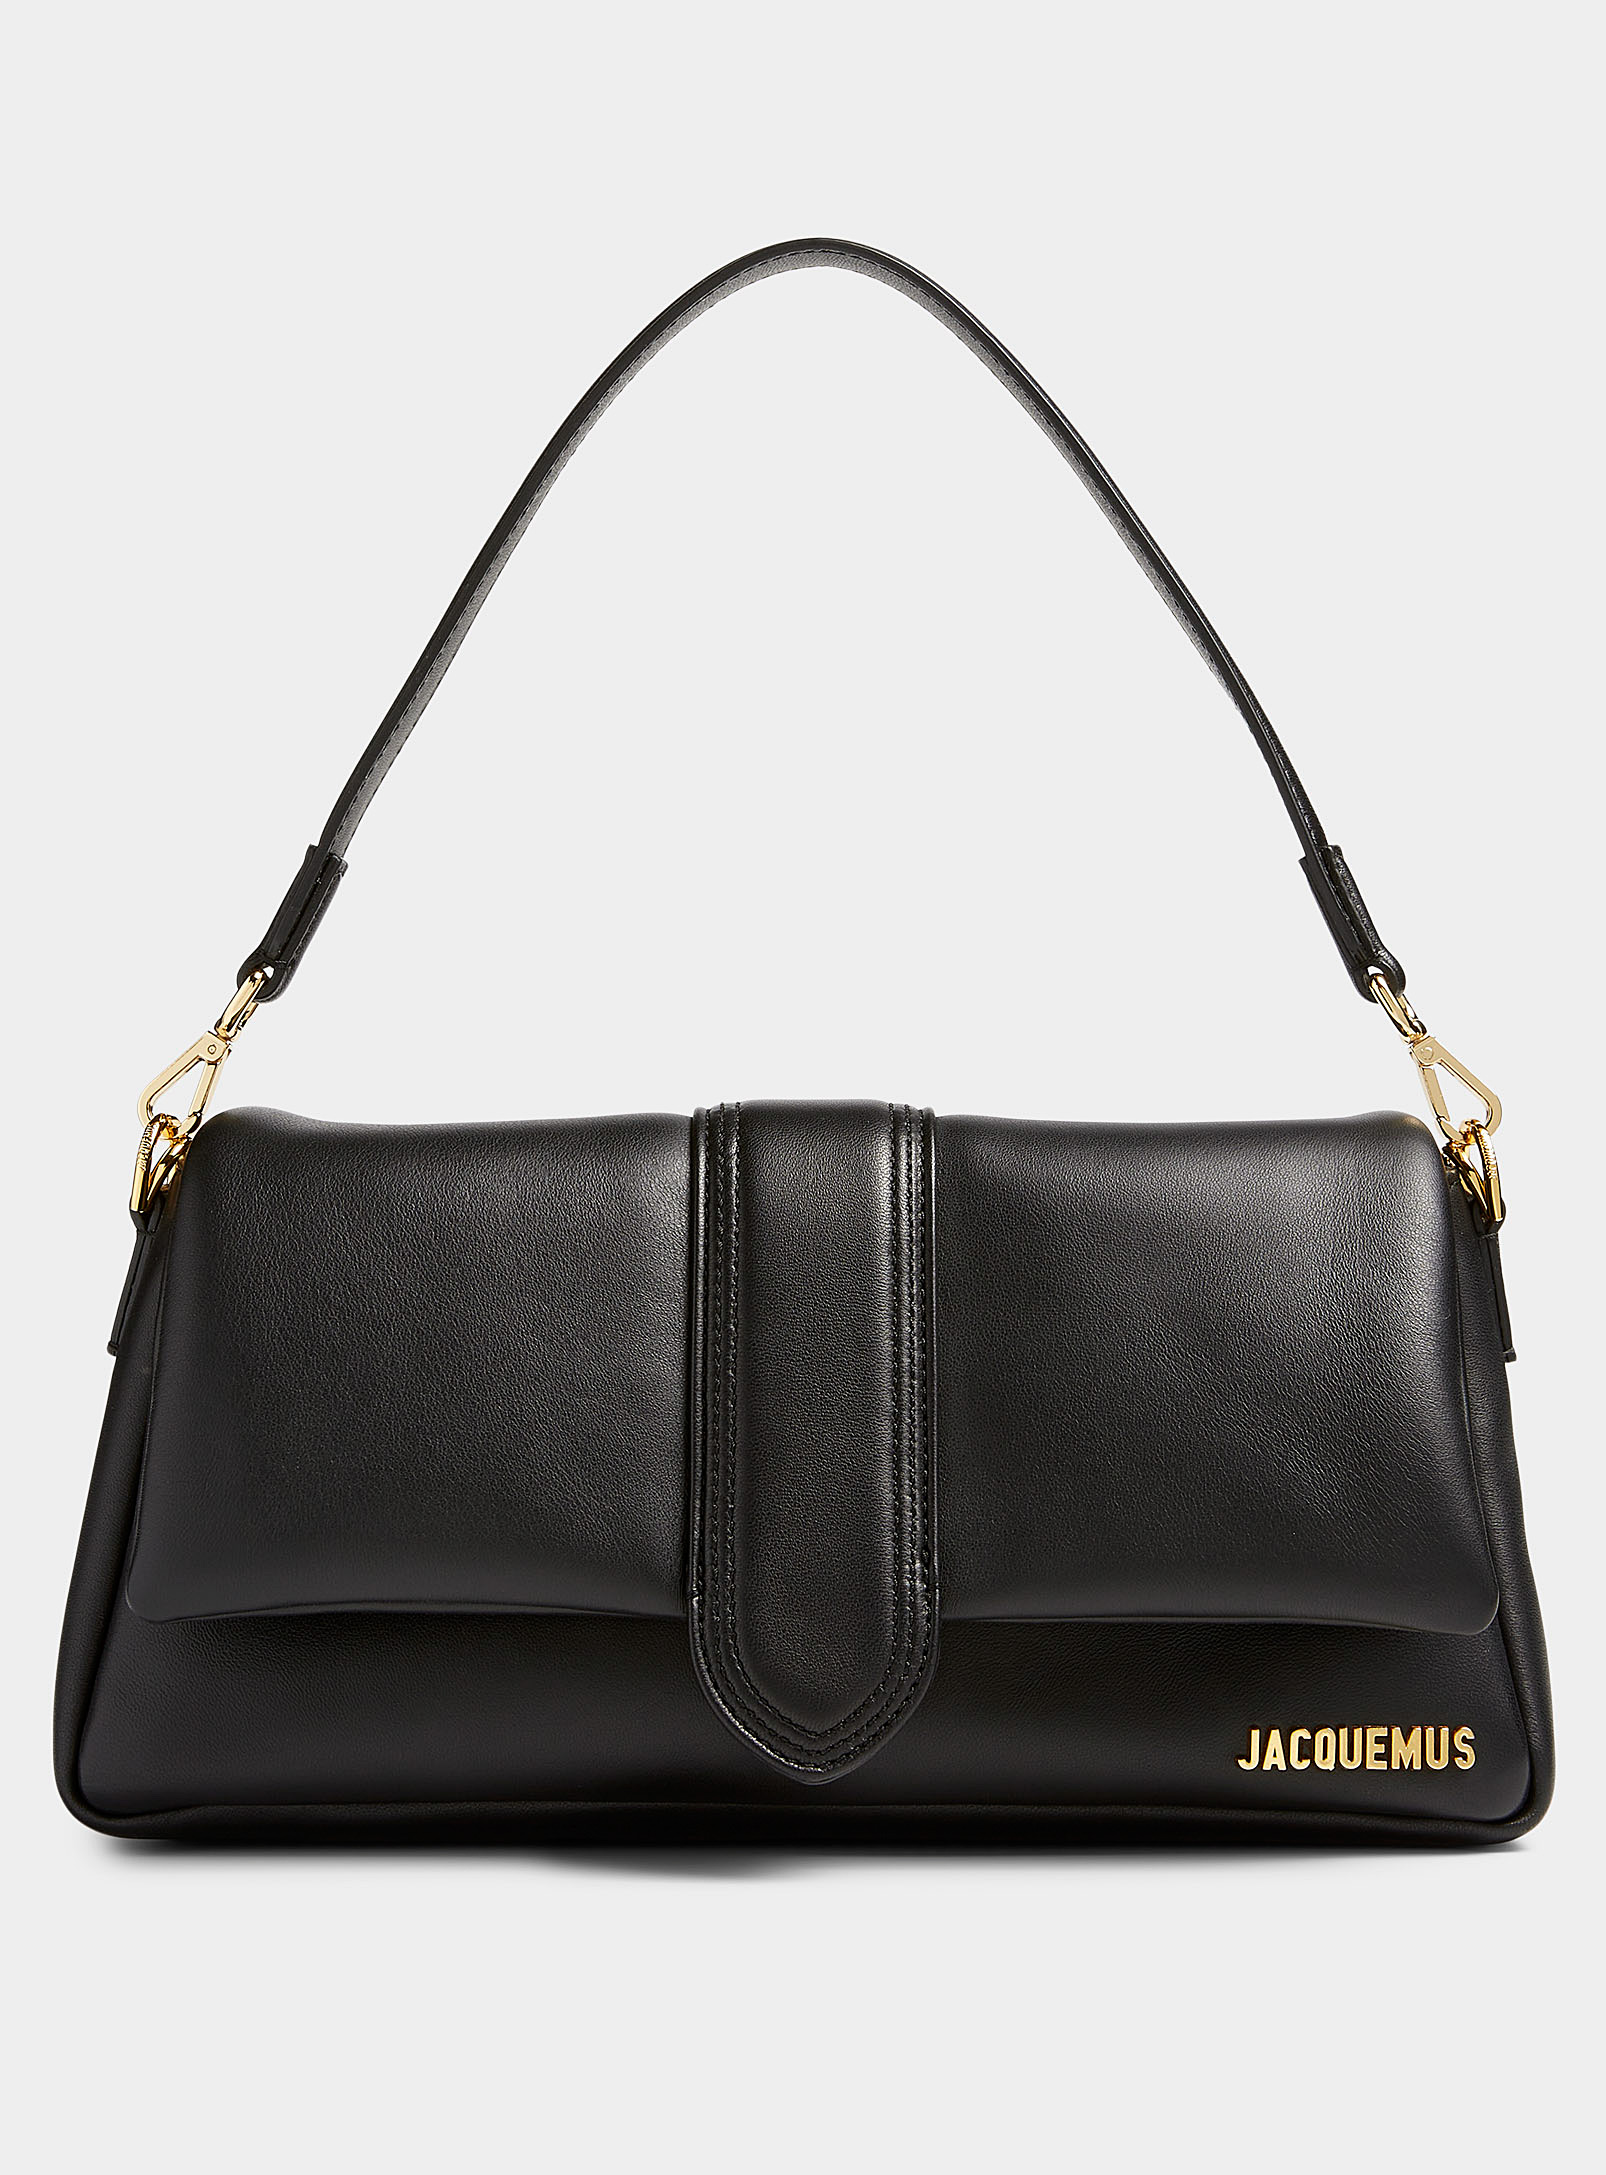 Jacquemus - Women's Bambimou handbag